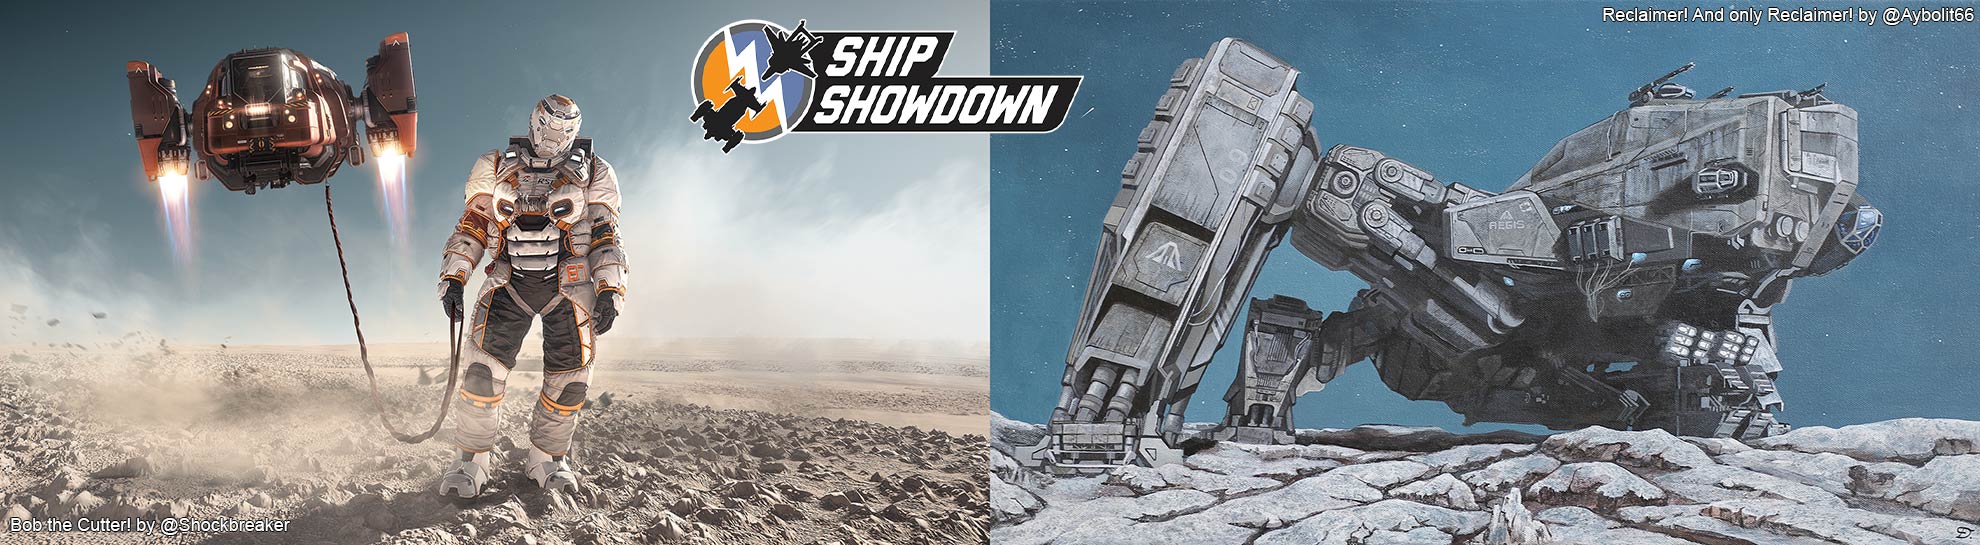 Star Citizen Ship-Showdown-2953-001